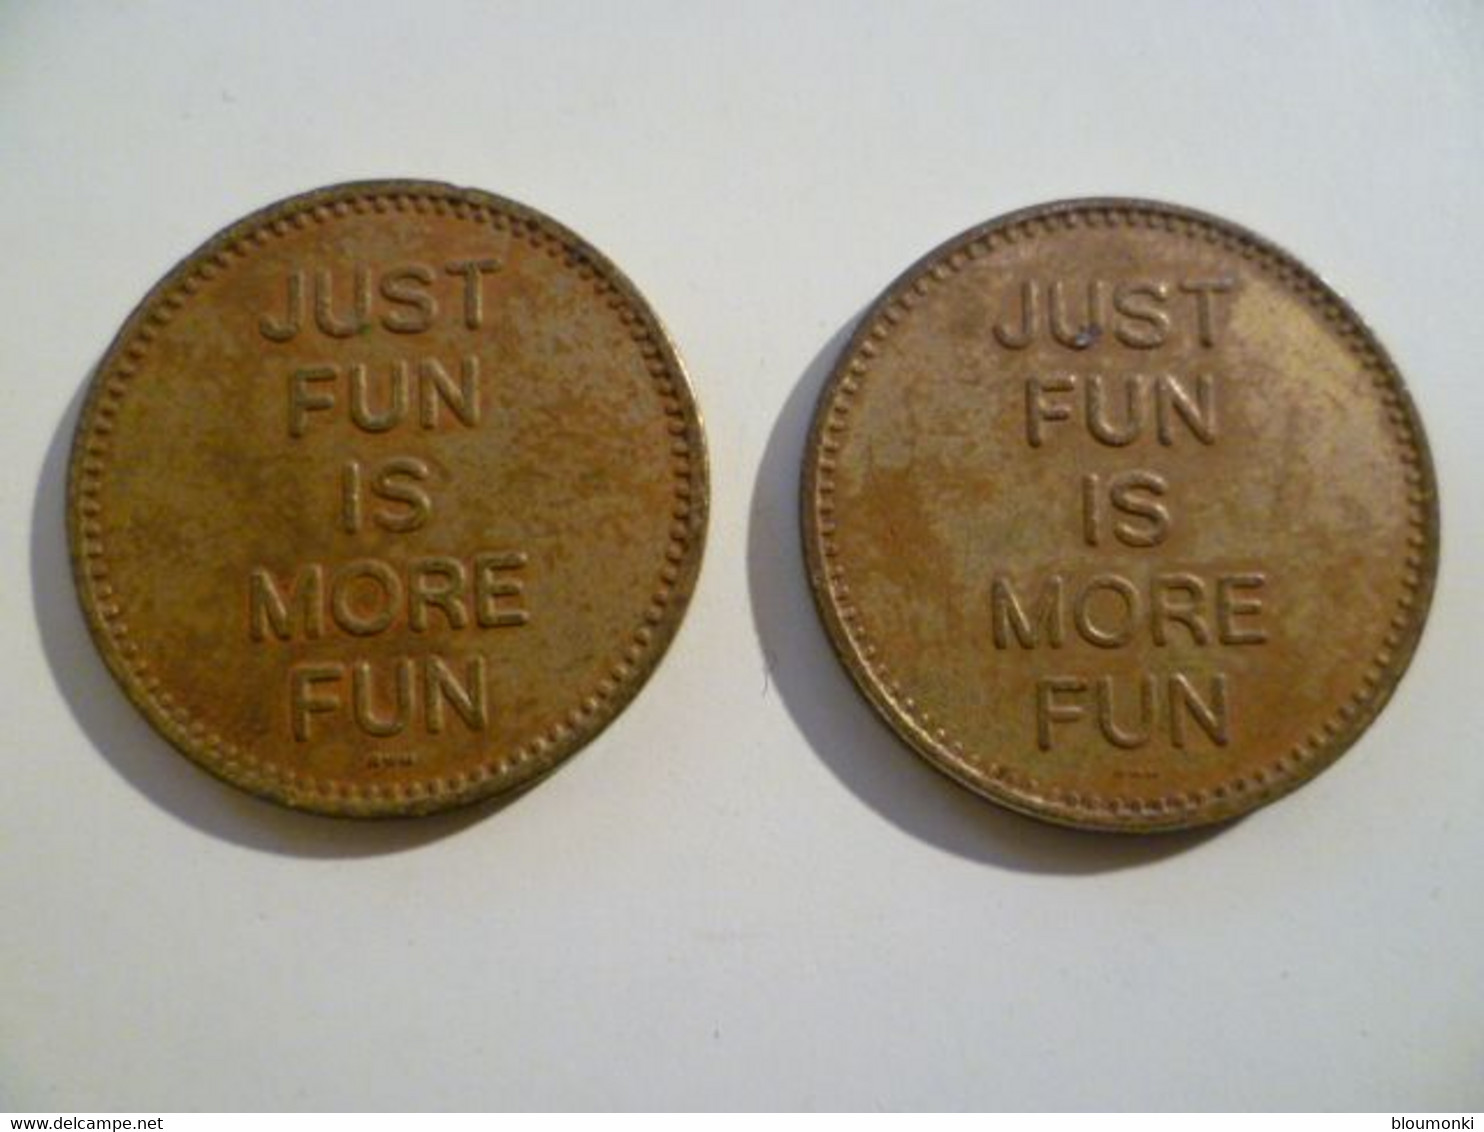 2 Jetons Etats Unis / USA Coins / ACRA No Cash Value Just Fun Is More Fun - Professionnels/De Société